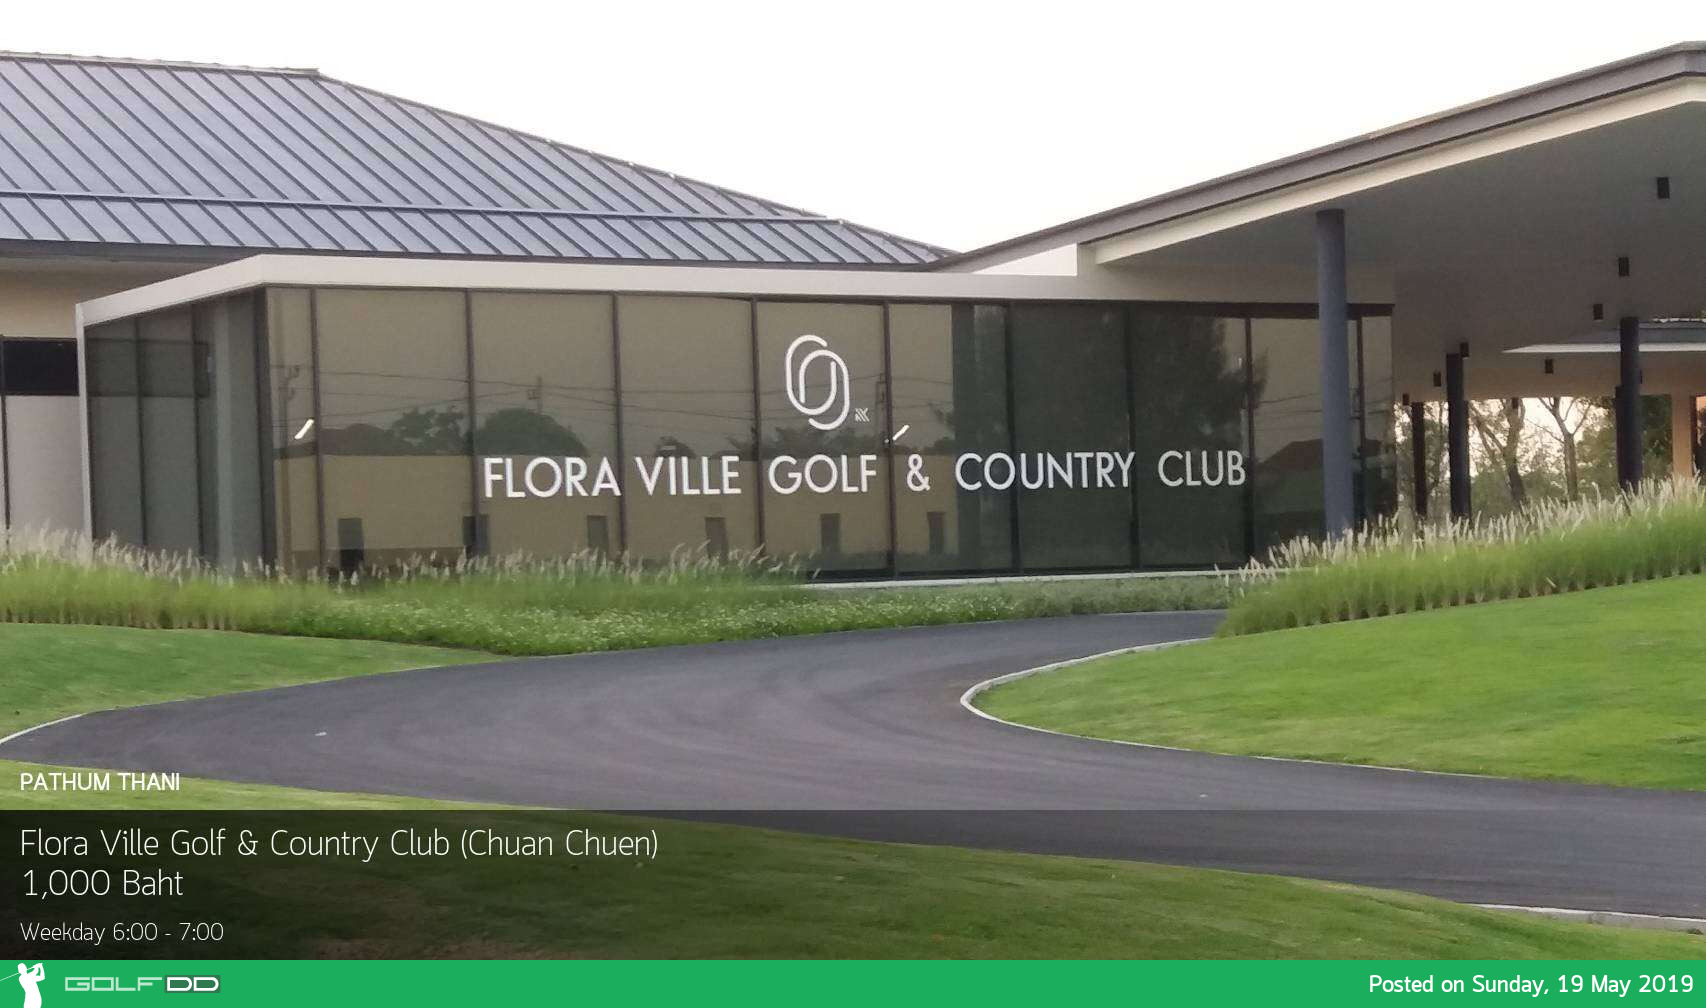 ออกรอบพักผ่อน ใกล้ๆ กรุงเทพฯ ที่ Flora Ville Golf & Country Club ปทุมธานี 